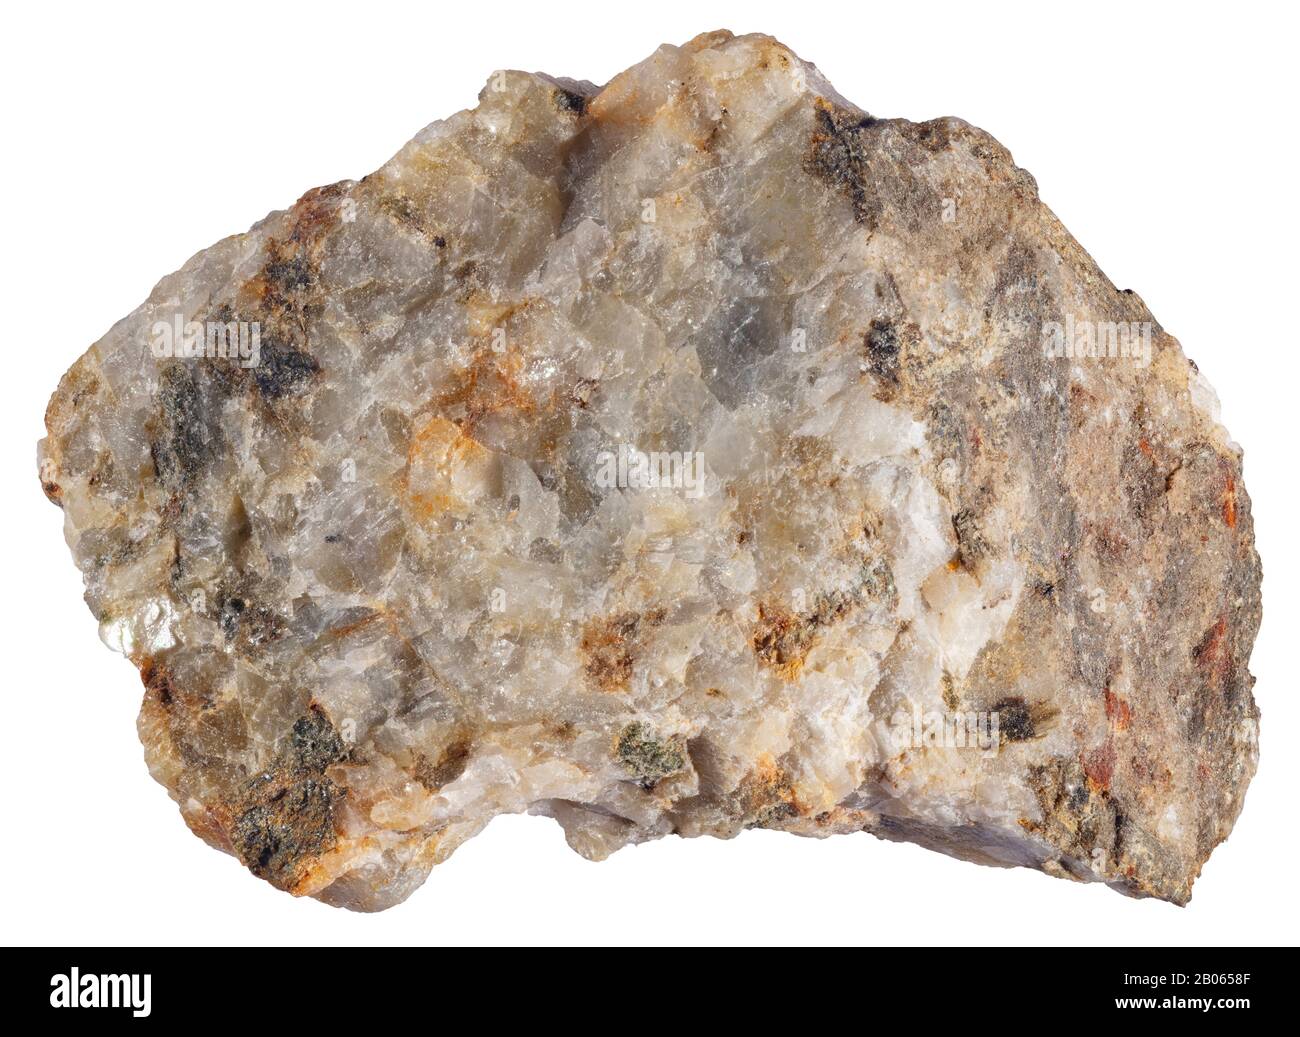 Calc-Silicato, Contact Metamorphism, Grenville, Quebec una roccia di calcare-silicato è una roccia prodotta da alterazione metasomatica. Foto Stock